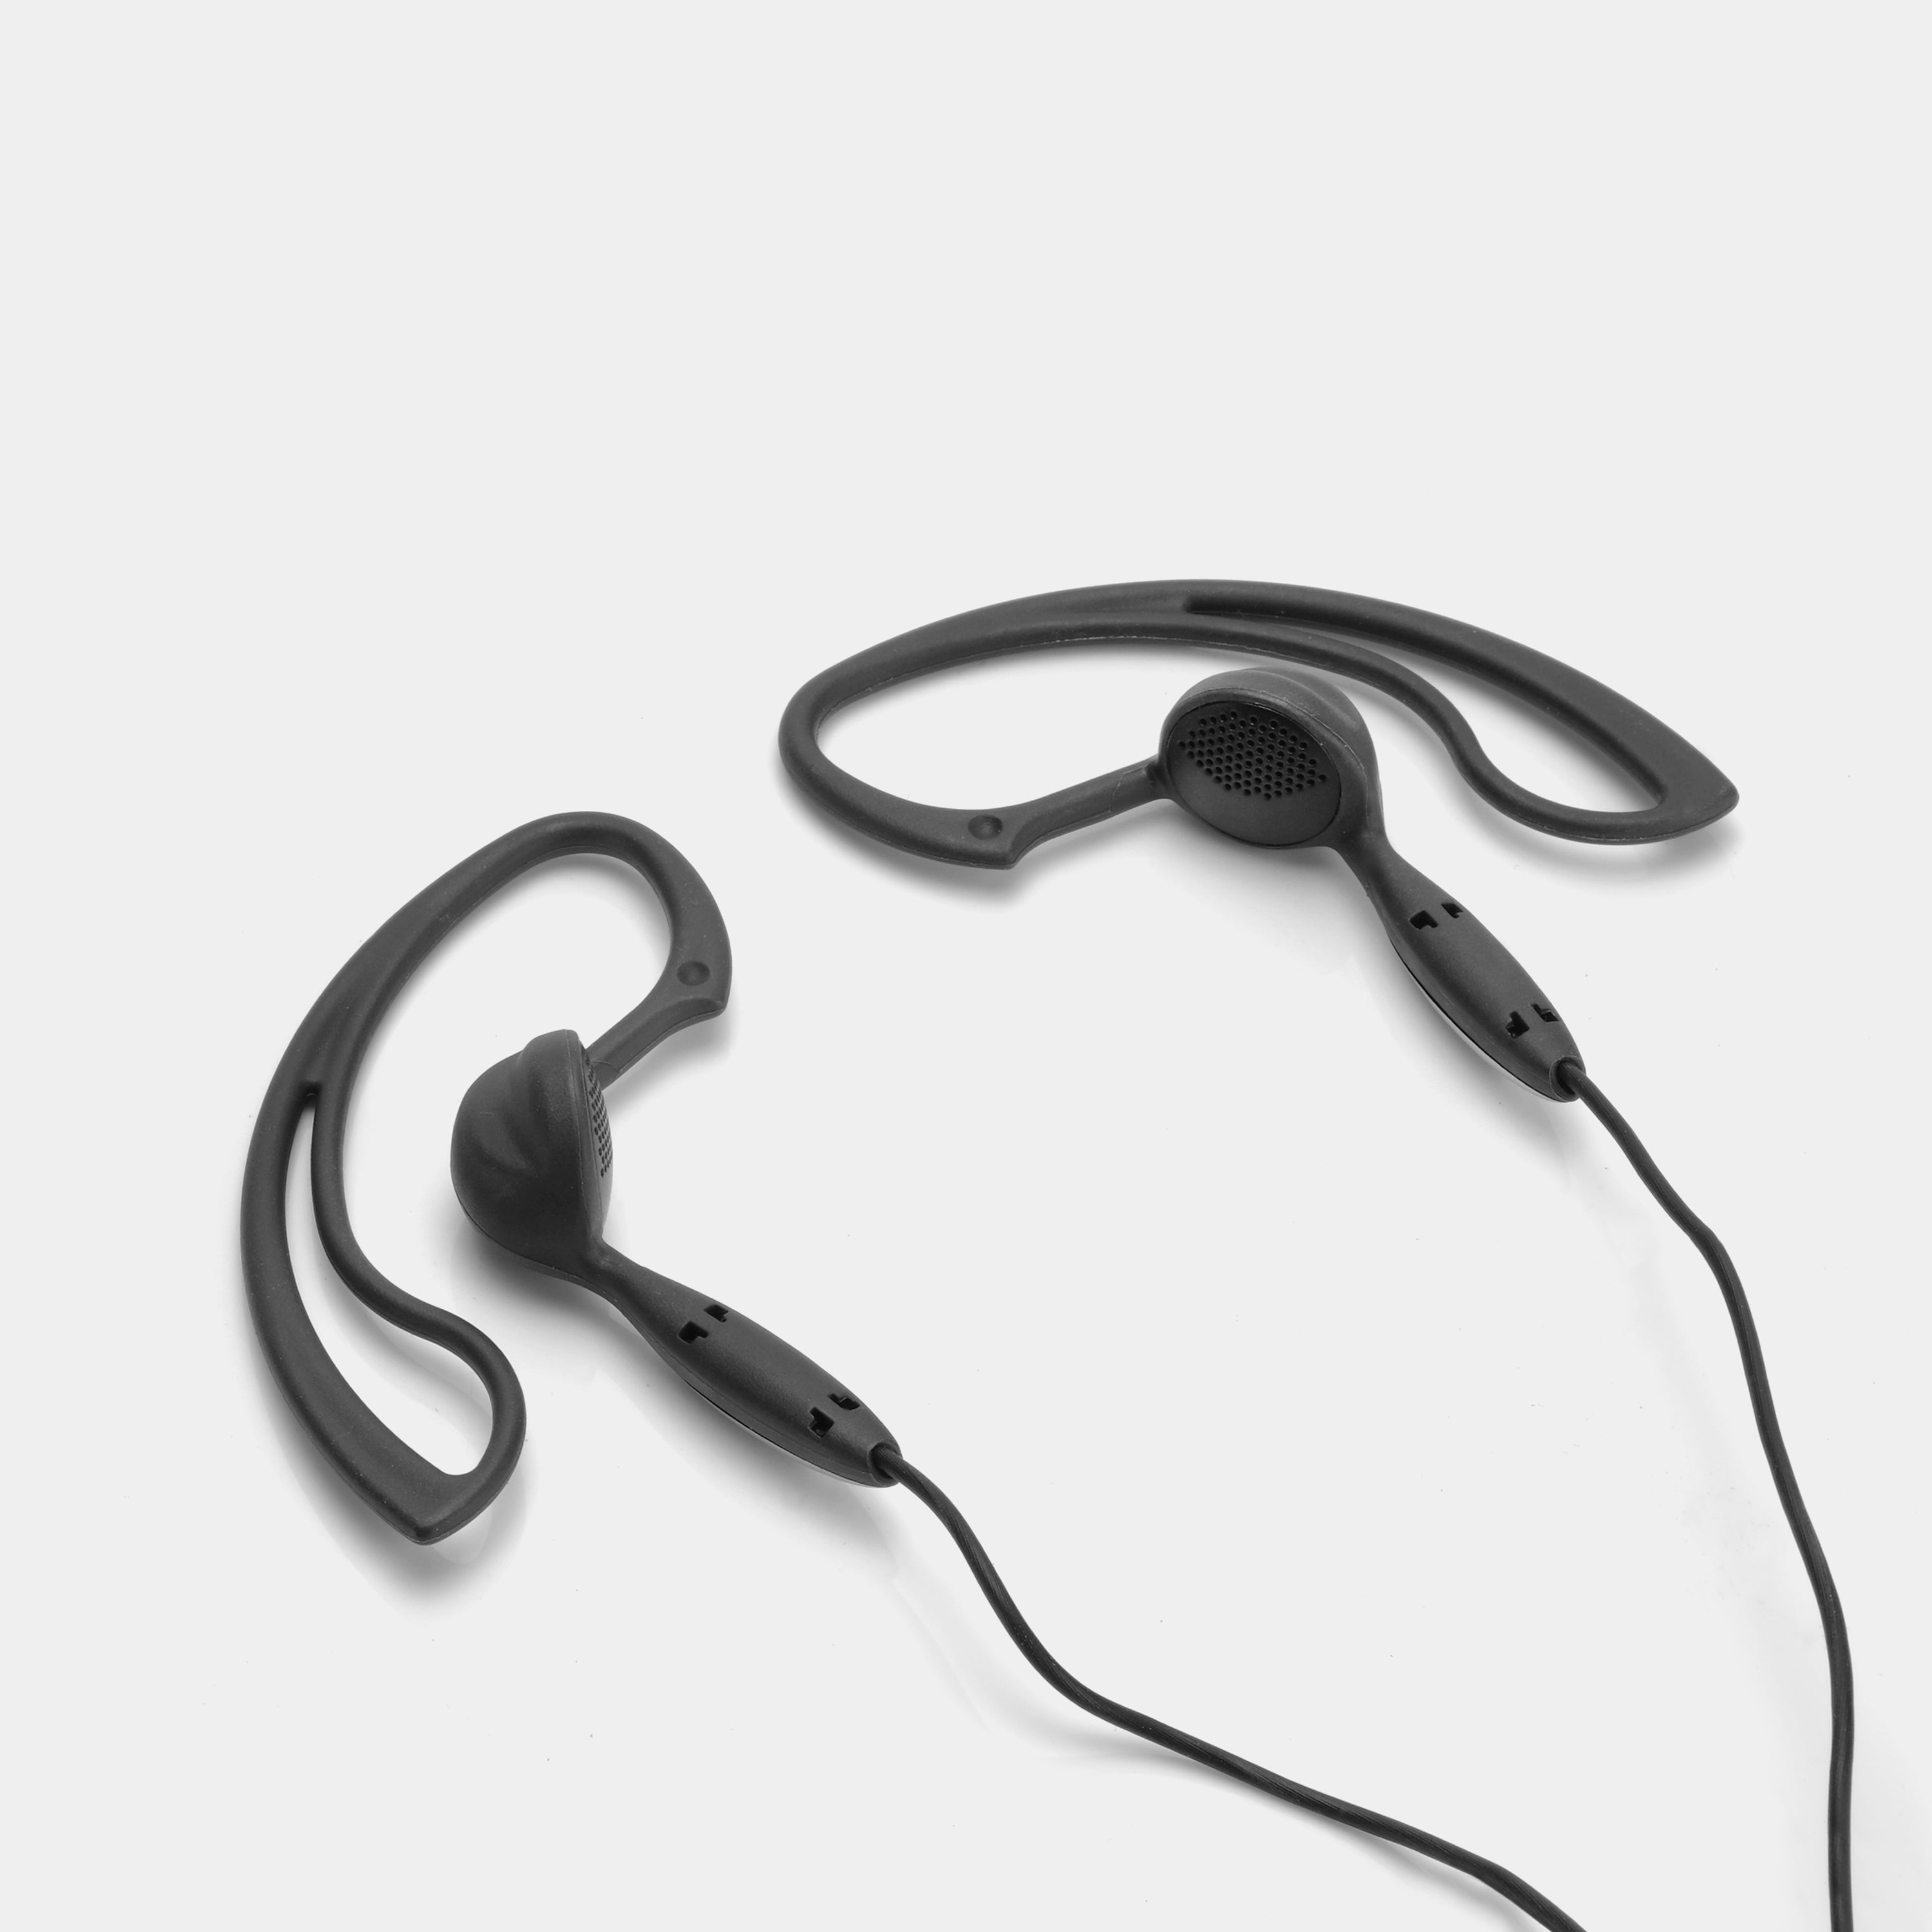 Vintage Sony MDR-J10 Around-Ear Headphones